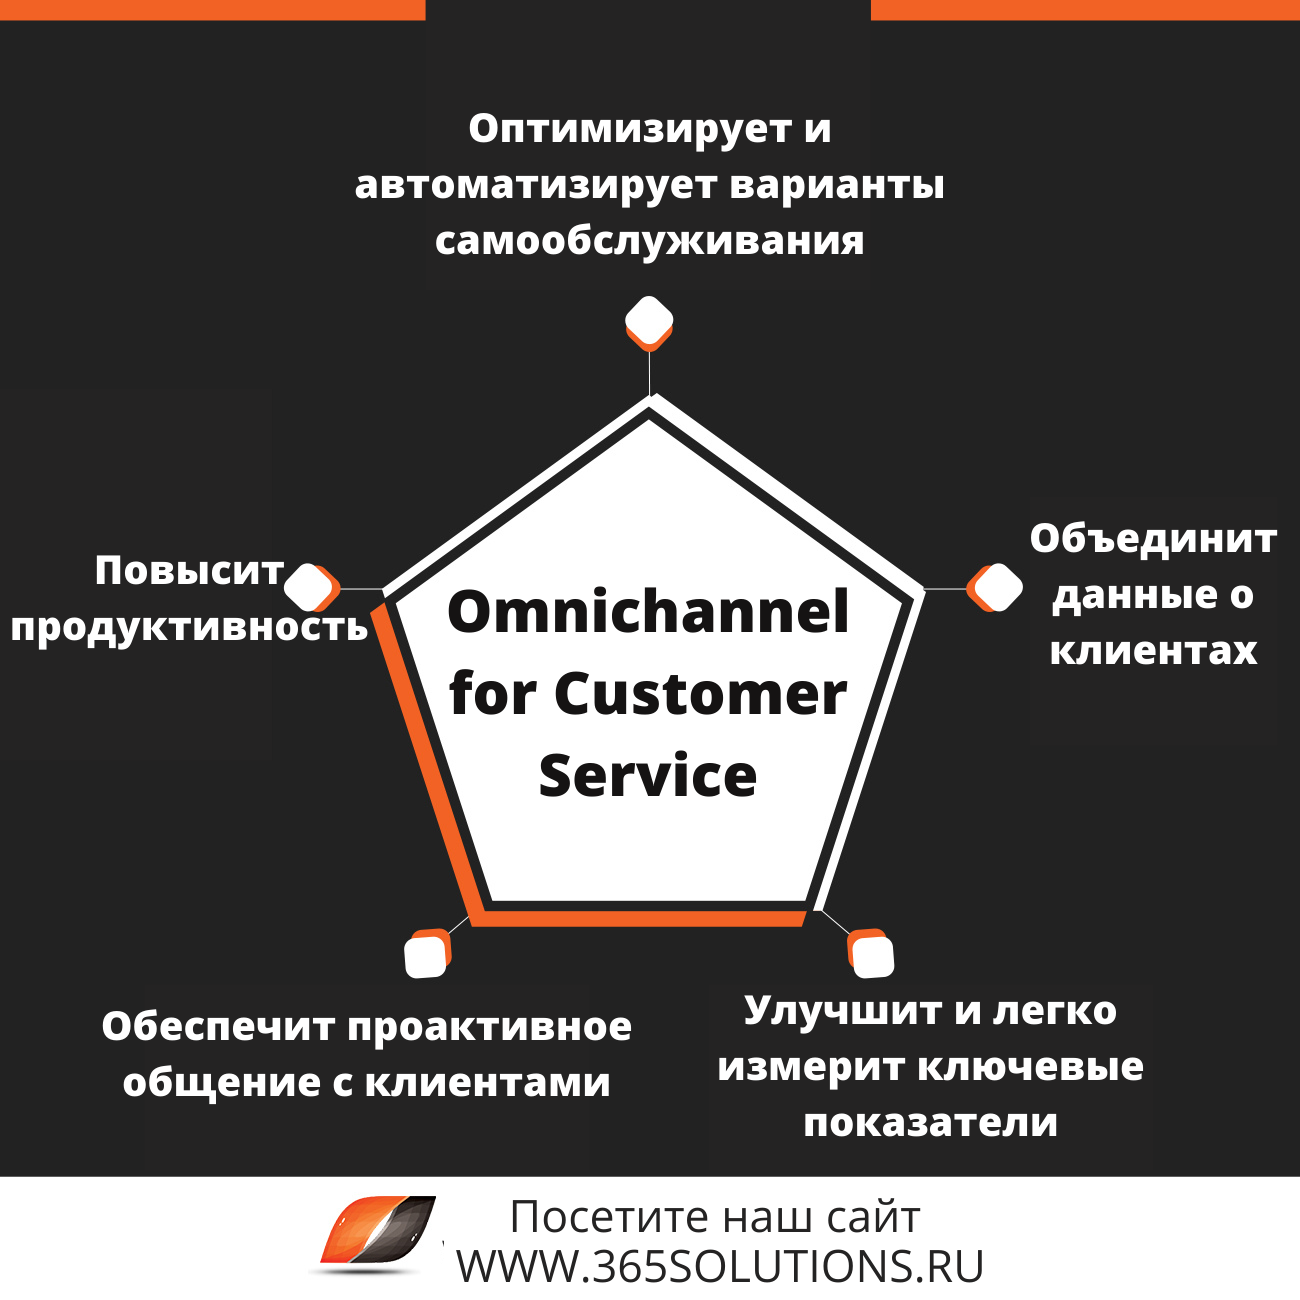 Омниканальность для бизнеса от Microsoft Omnichannel for Customer Service 3